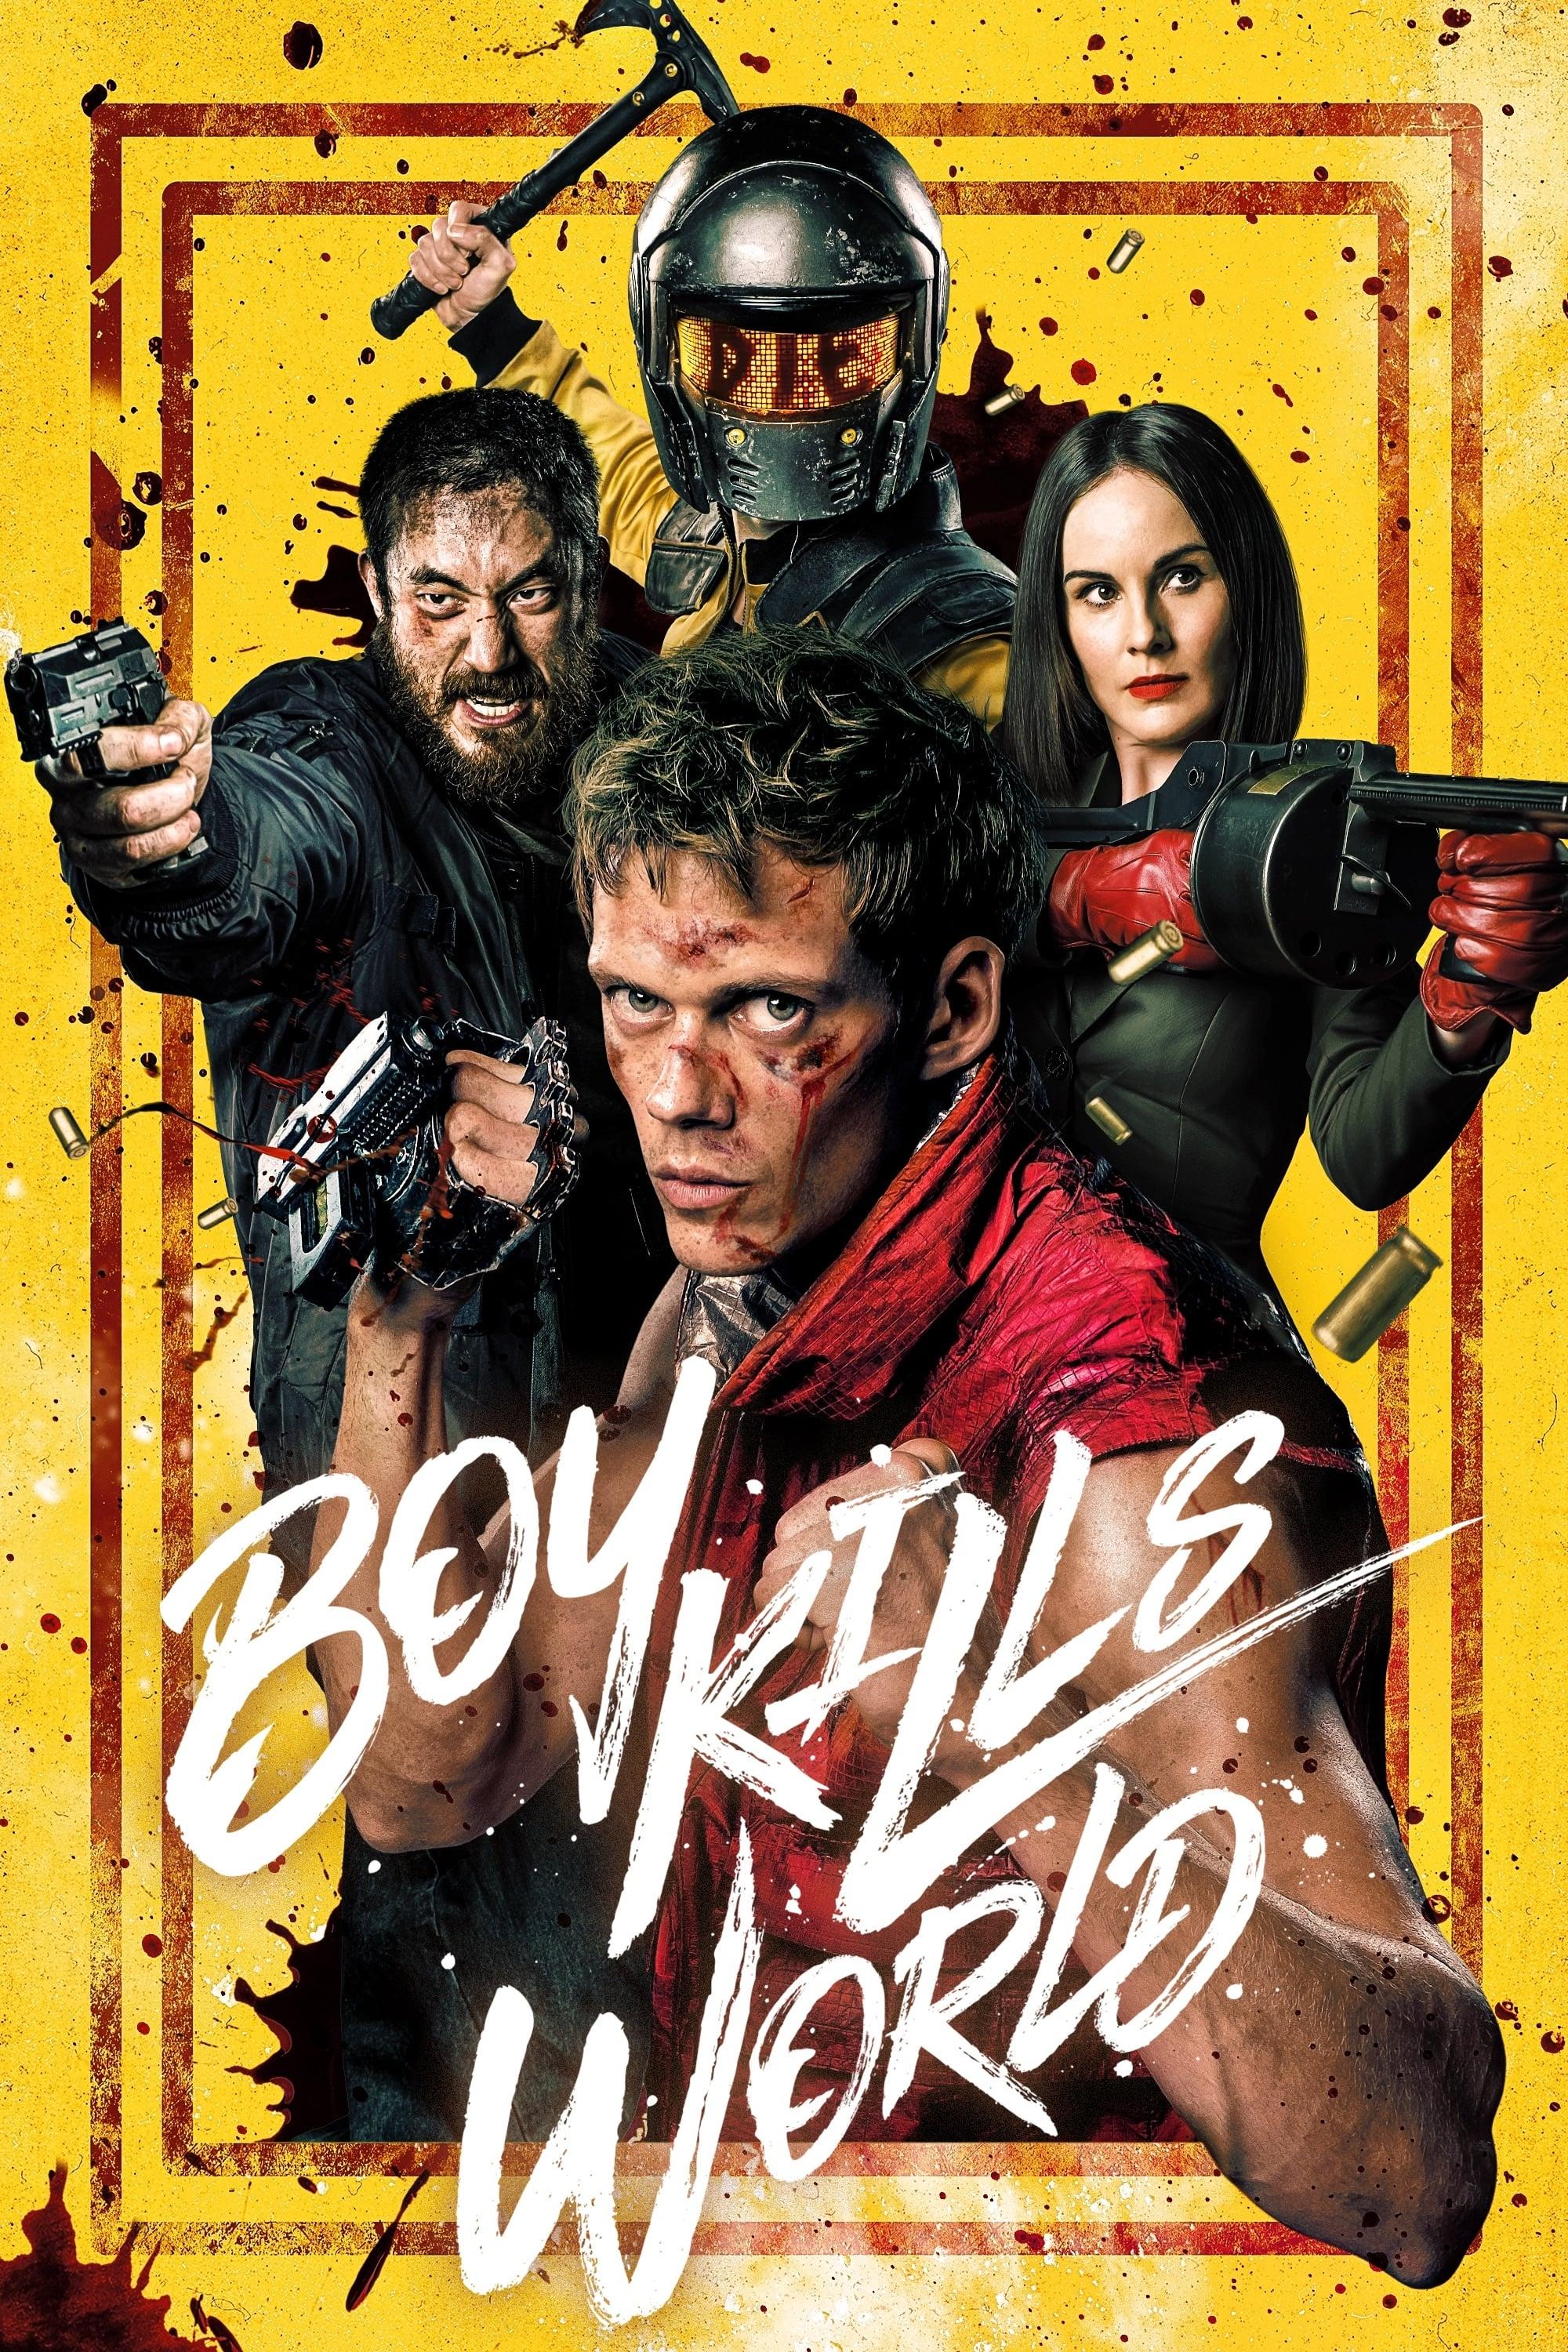 Movie poster of "Boy Kills World"